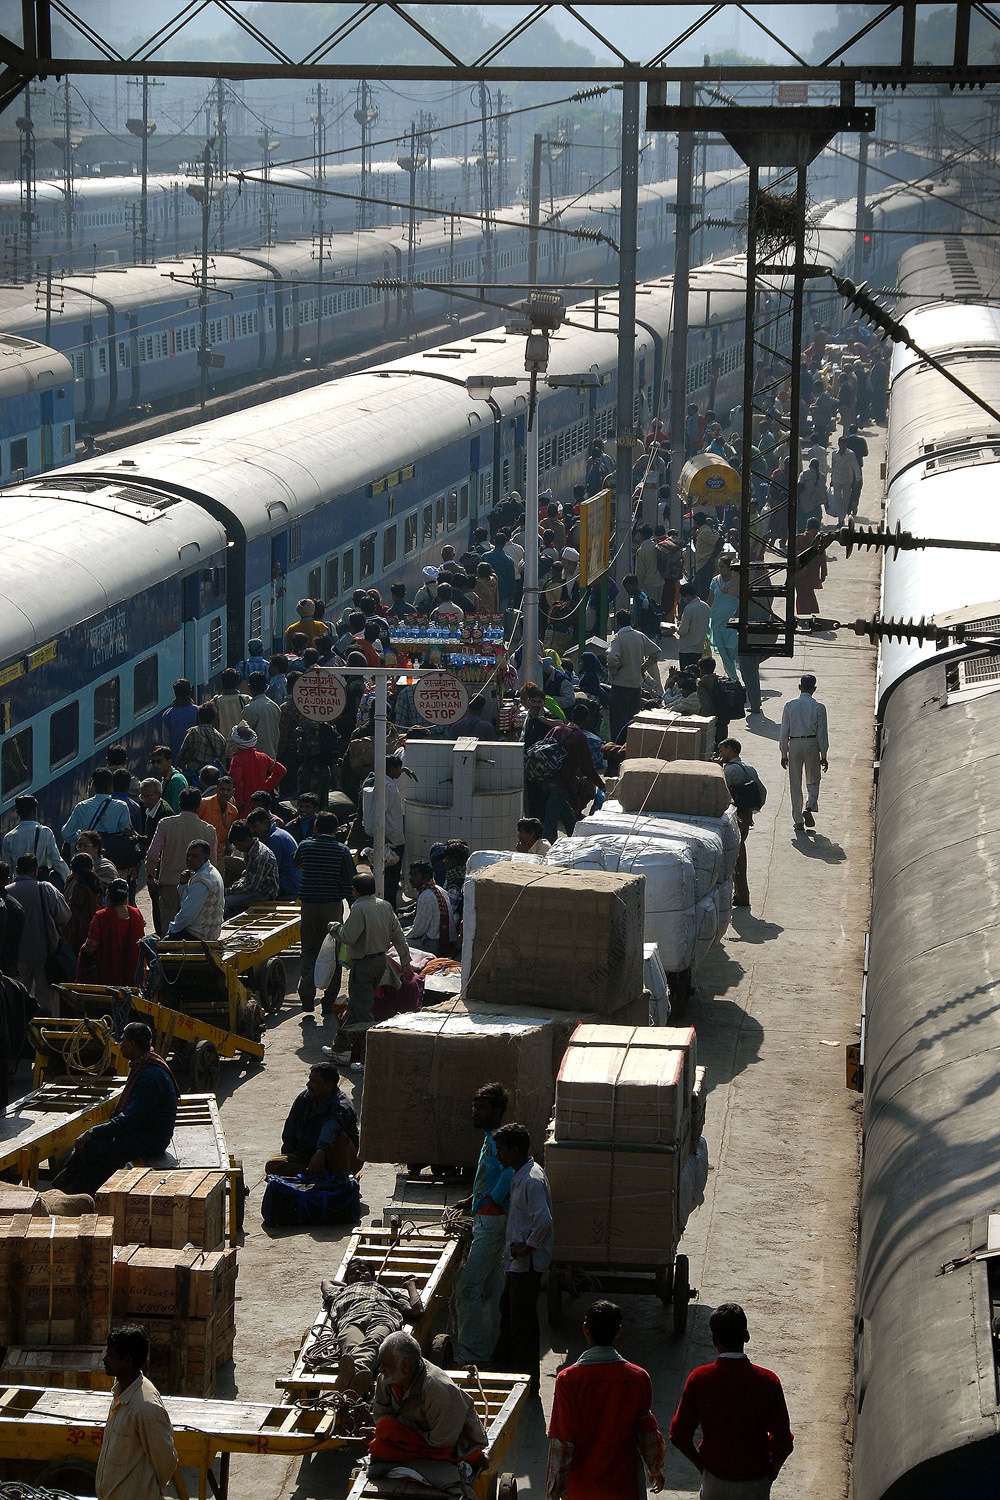 bill-hocker-delhi-railway-station-new-delhi-india-2006